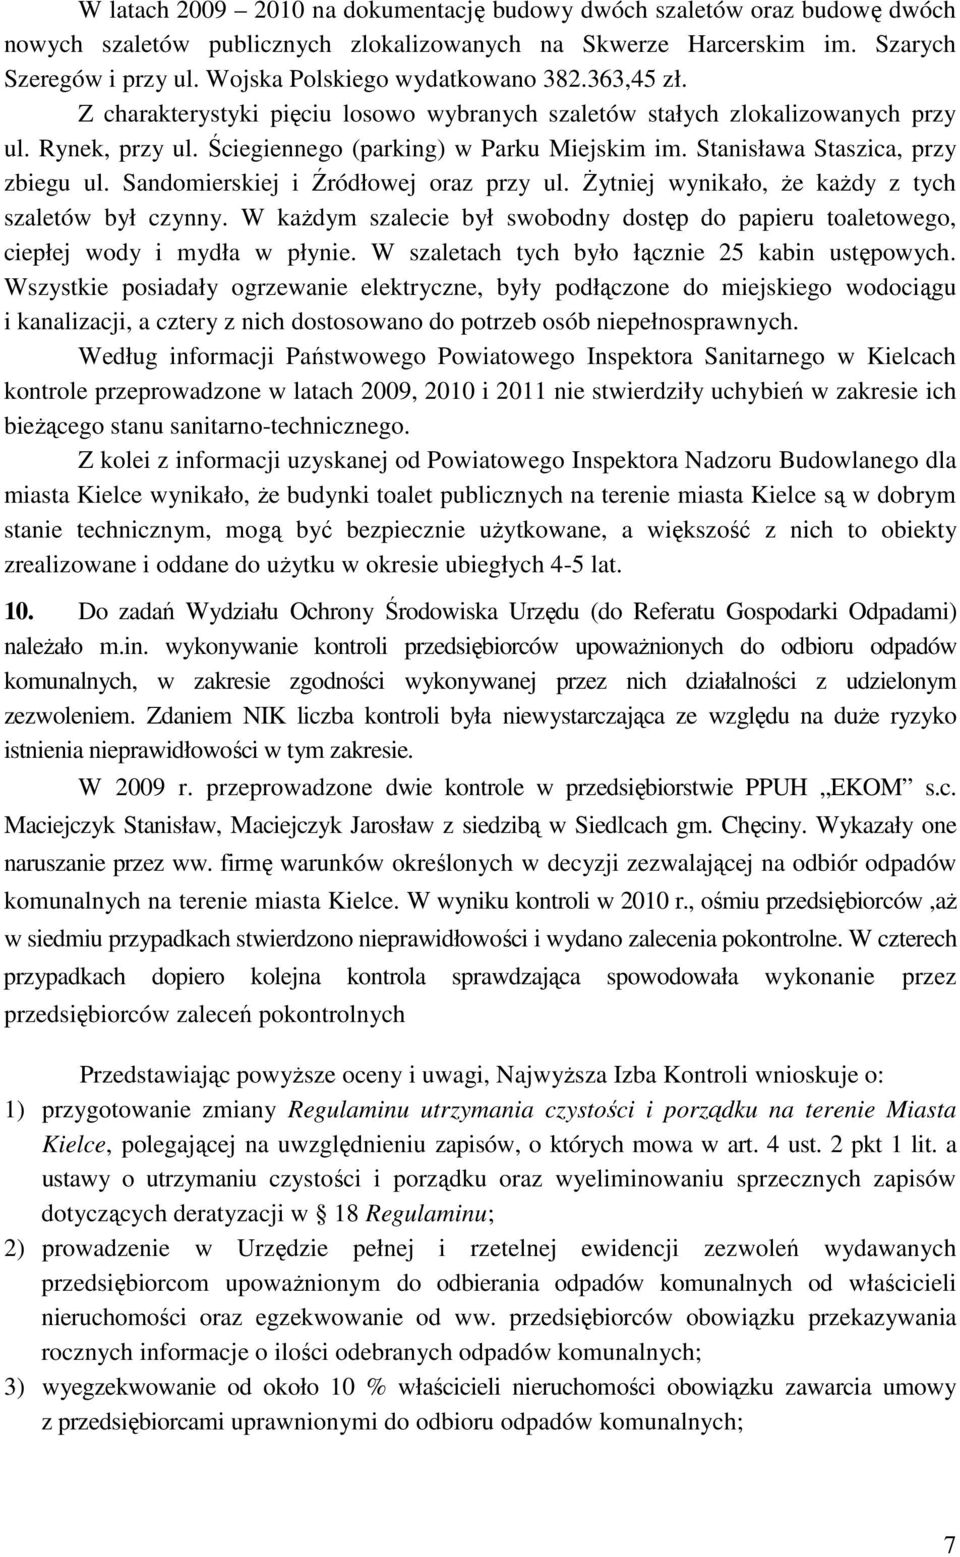 Stanisława Staszica, przy zbiegu ul. Sandomierskiej i Źródłowej oraz przy ul. śytniej wynikało, Ŝe kaŝdy z tych szaletów był czynny.